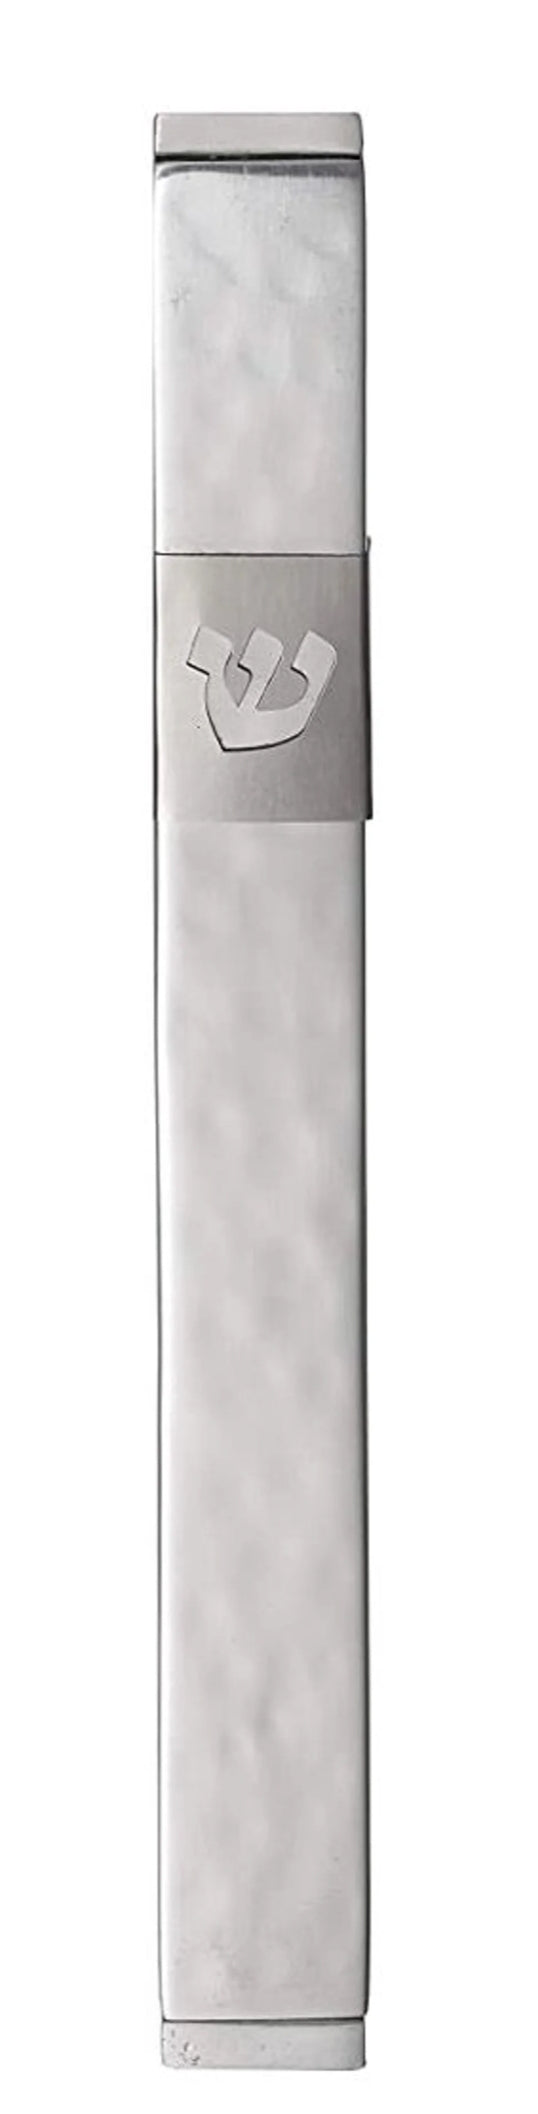 Mezuzah Aluminum Case Silver Color